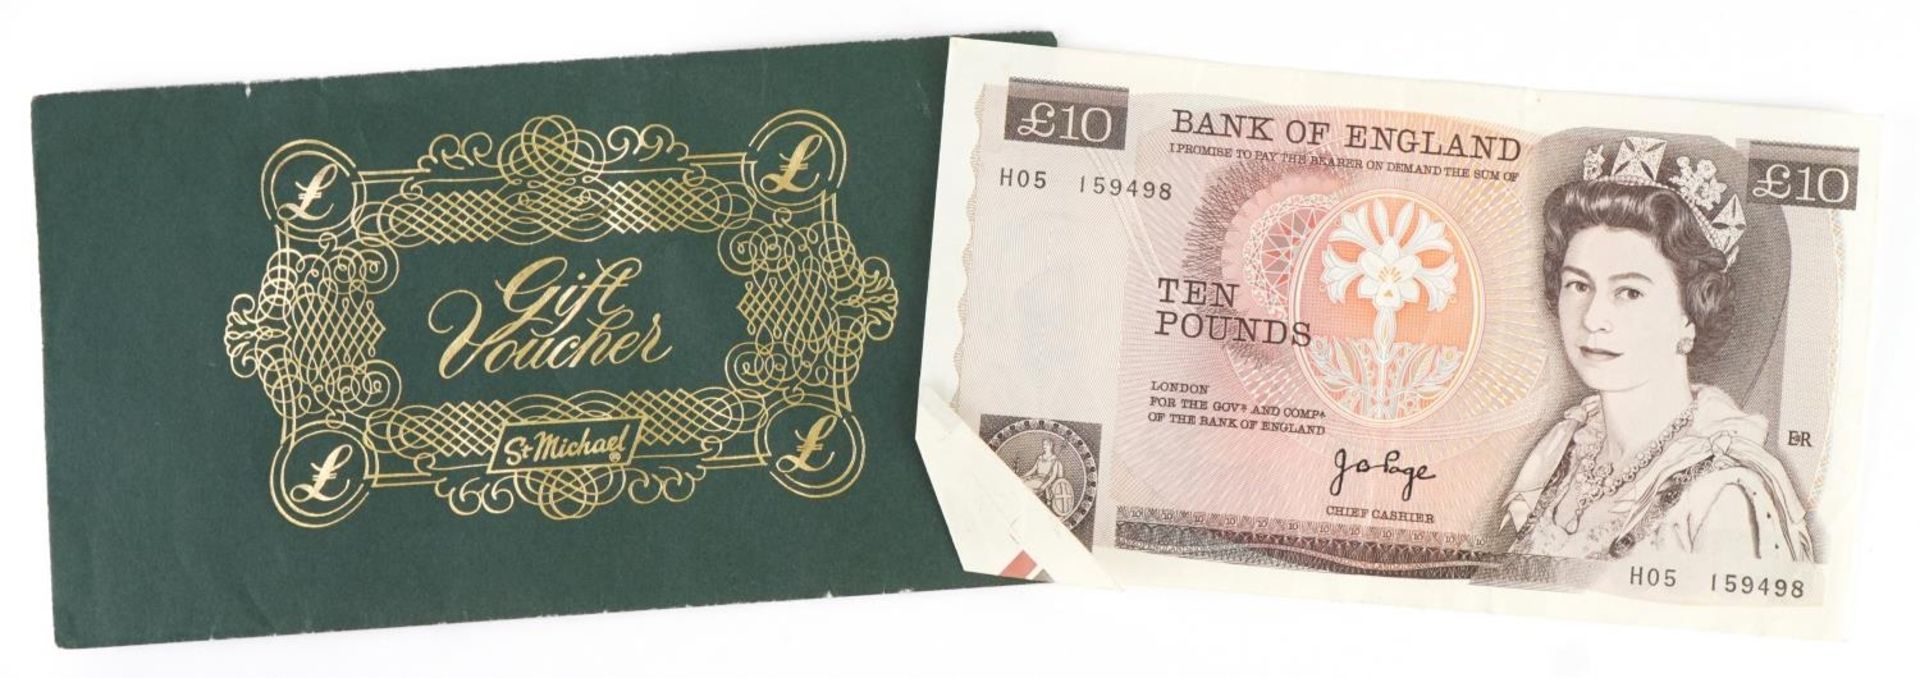 Bank of England Elizabeth II ten pound banknote with cutting error, J B Page Chief Cashier, serial - Bild 4 aus 4